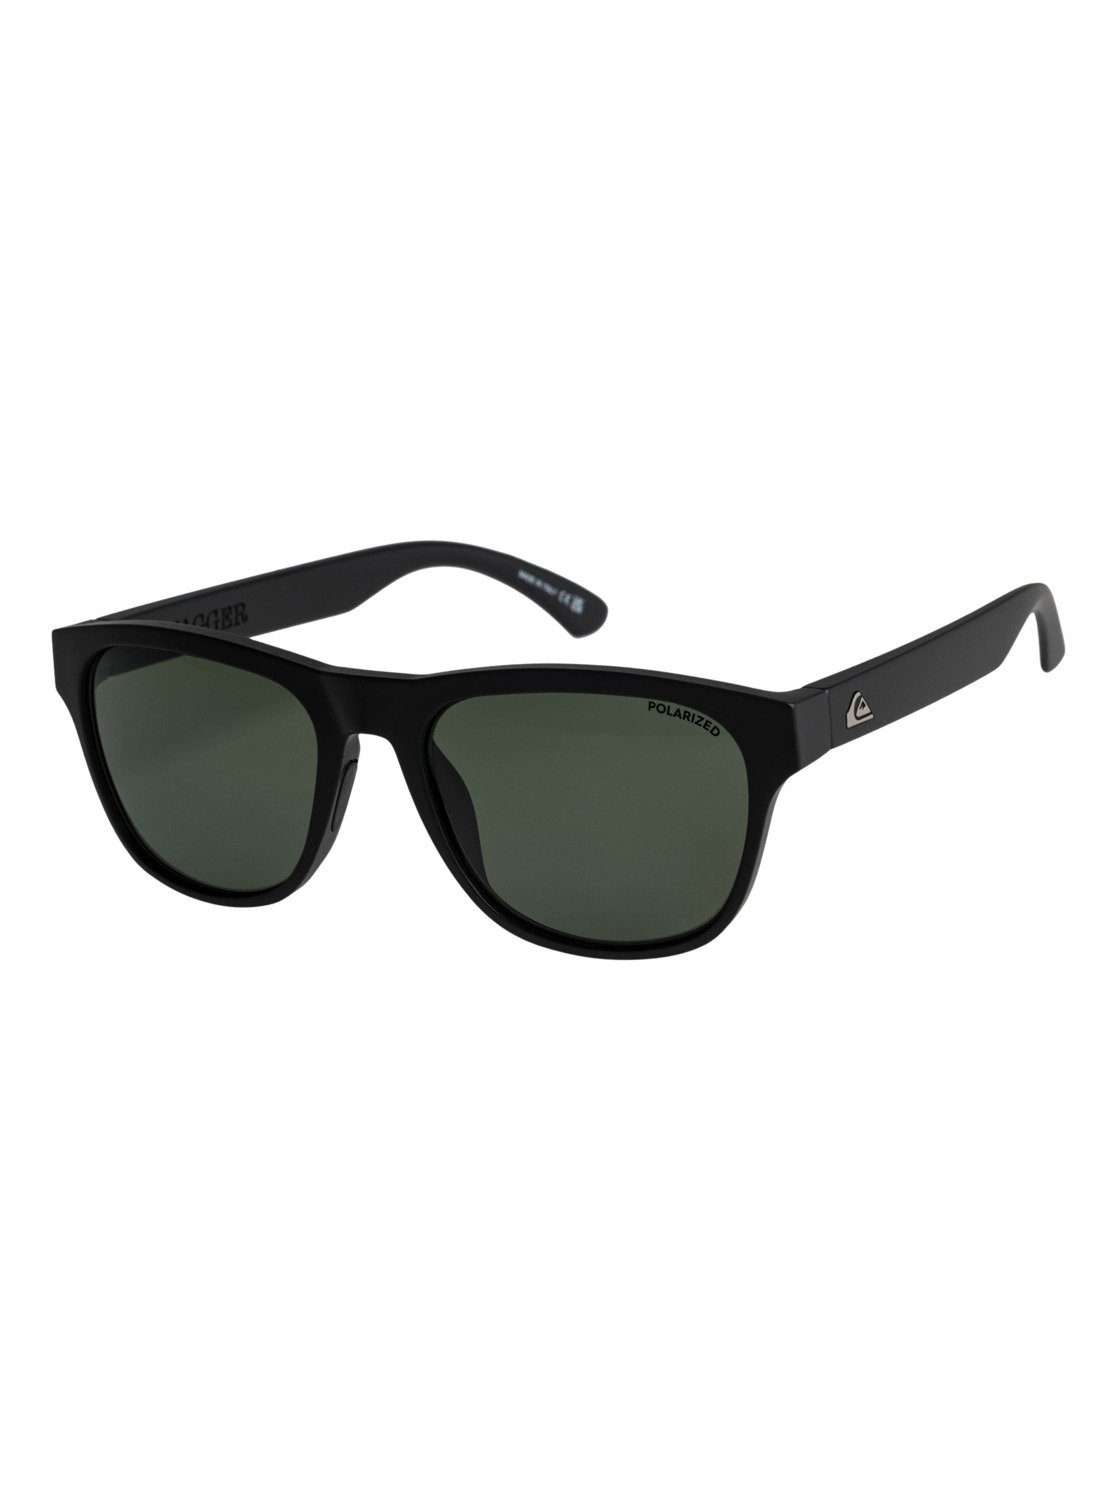 Tagger Black/Green Polarized Plz Sonnenbrille Quiksilver